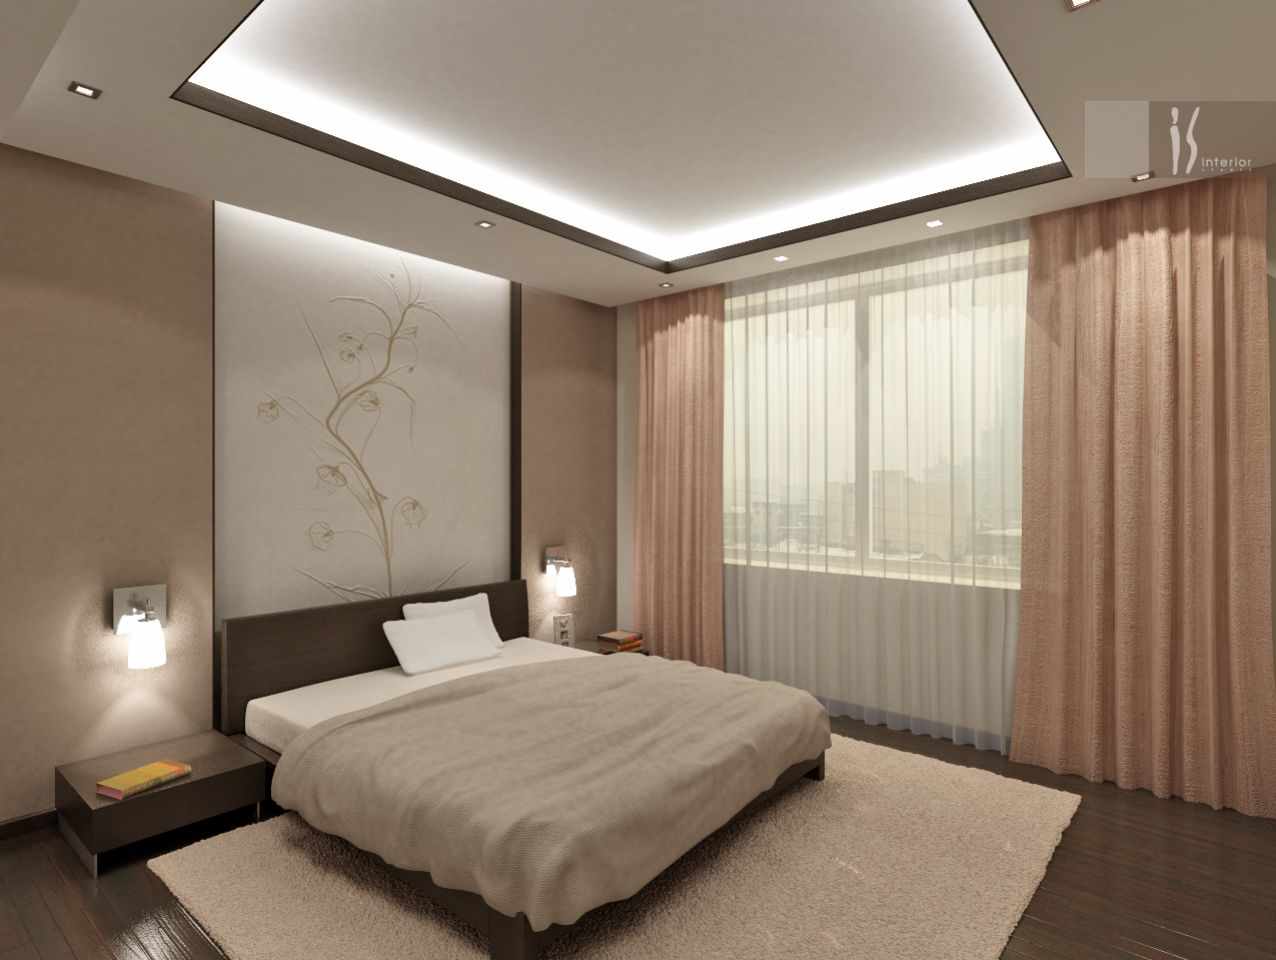 Un esempio di un bellissimo design in stile camera da letto